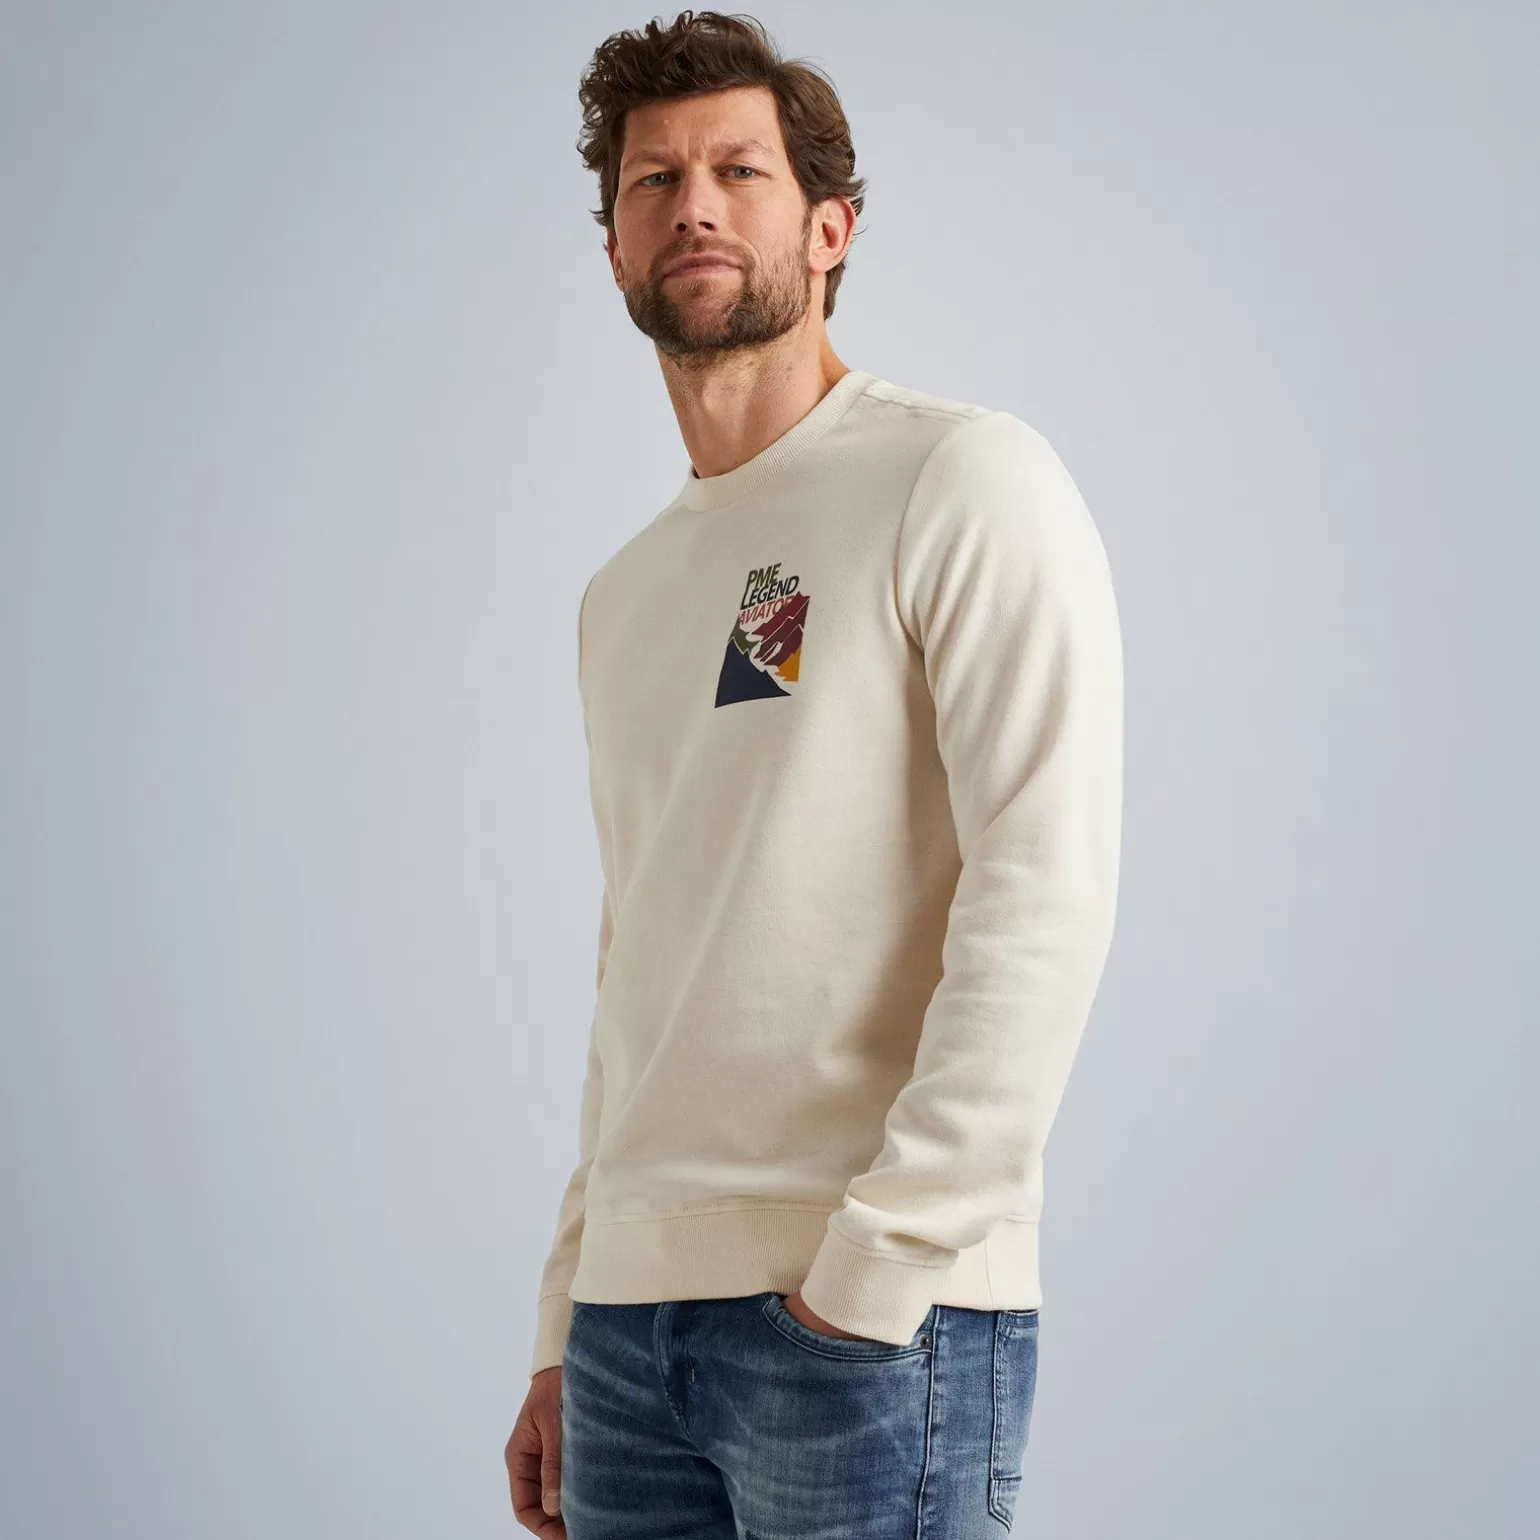 Tops*PME Legend Tops Sweatshirt In Interlock Jersey